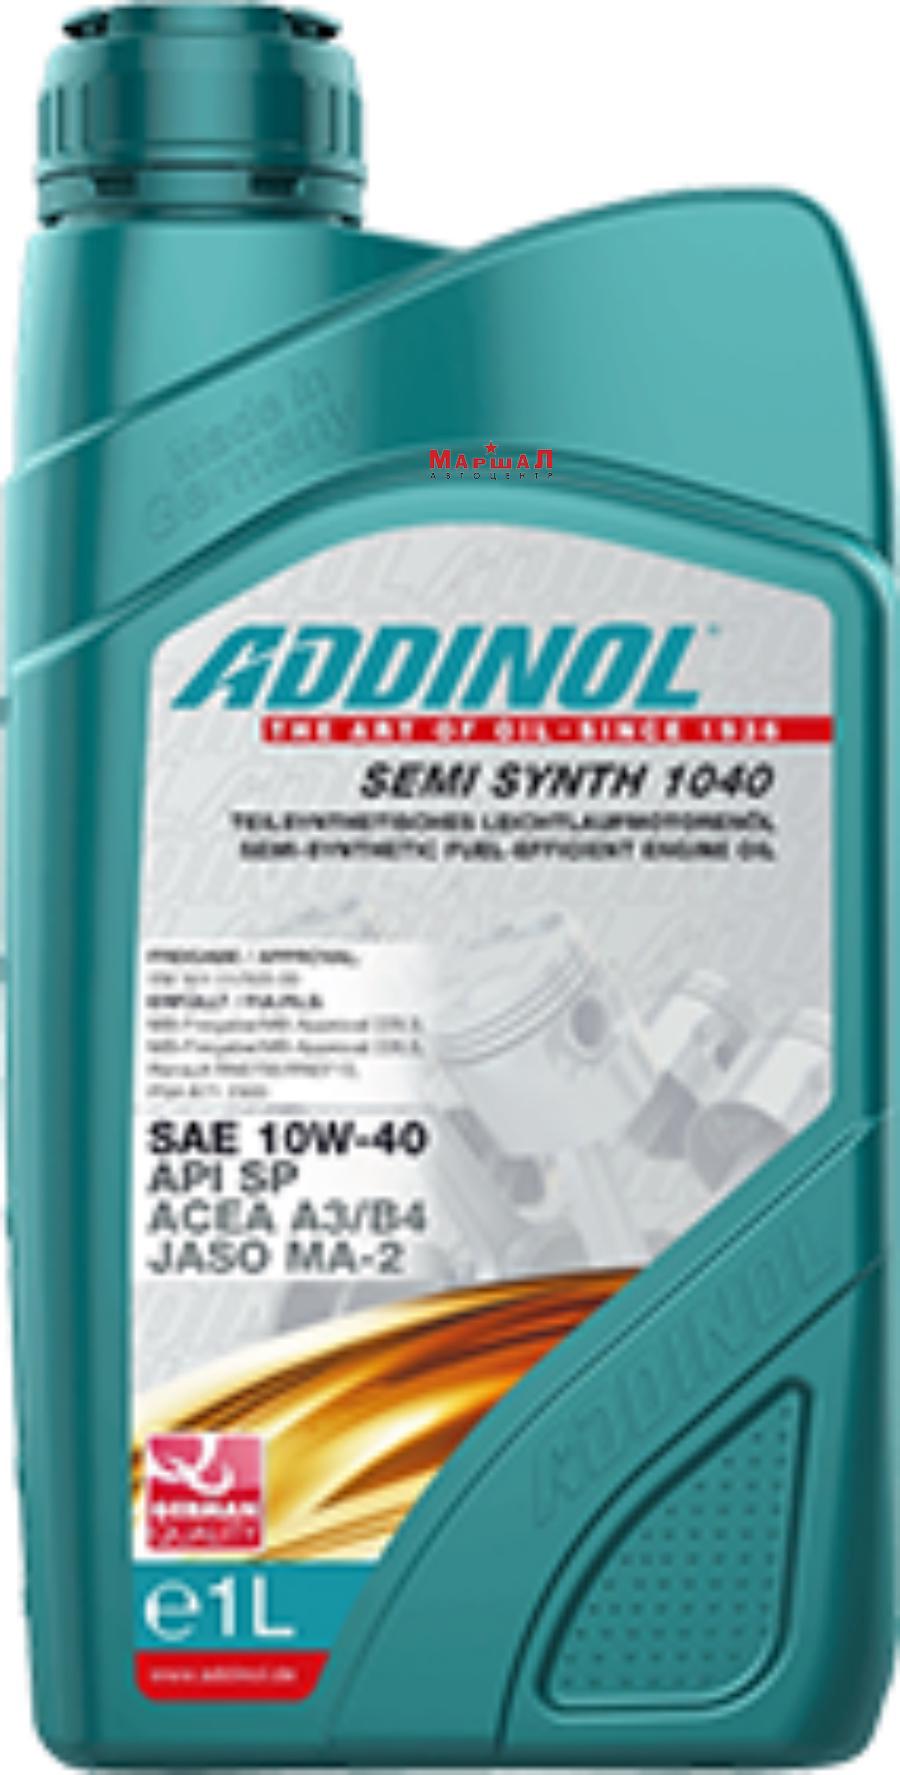 4014766072702 ADDINOL Масло моторное полусинтетическое Semi Synth 1040 10W-40, 1л